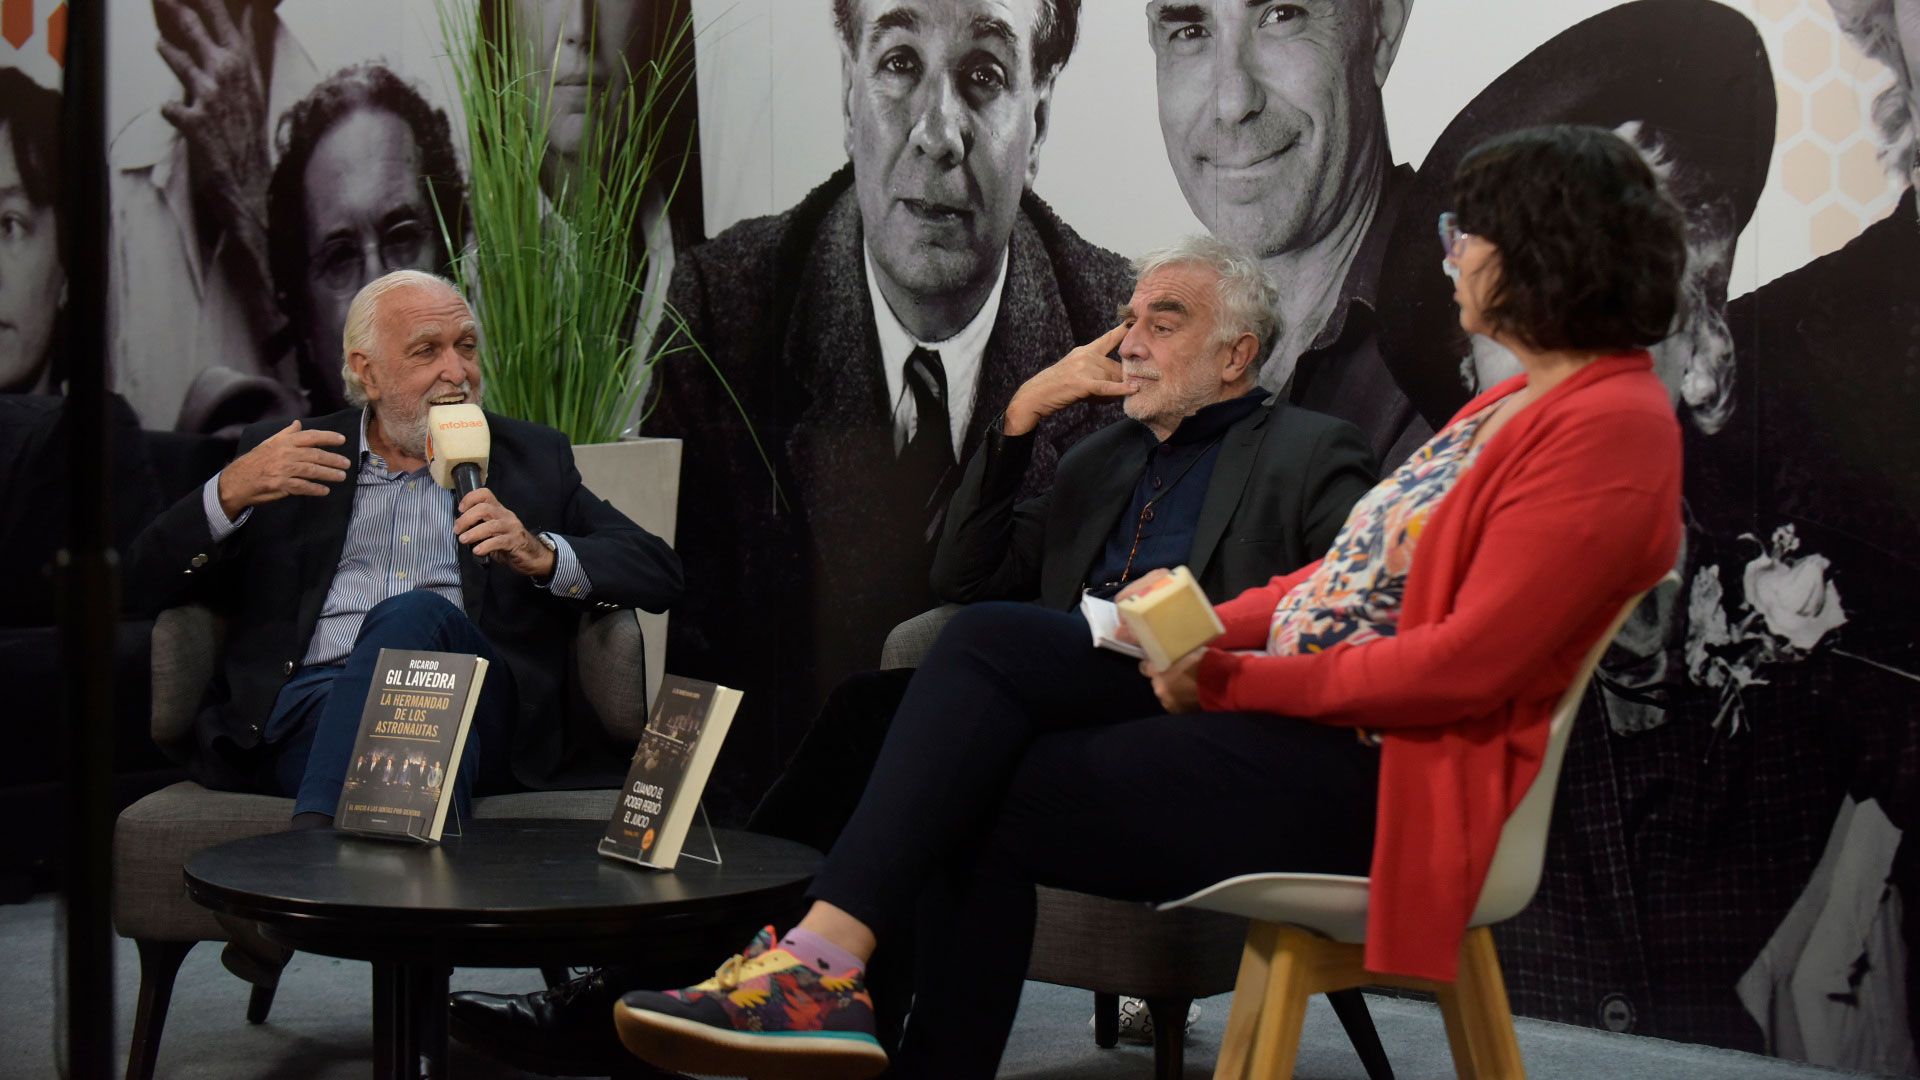 Feria del libro 2023 - Entrevista a Gil Lavedra y Luis Moreno Ocampo